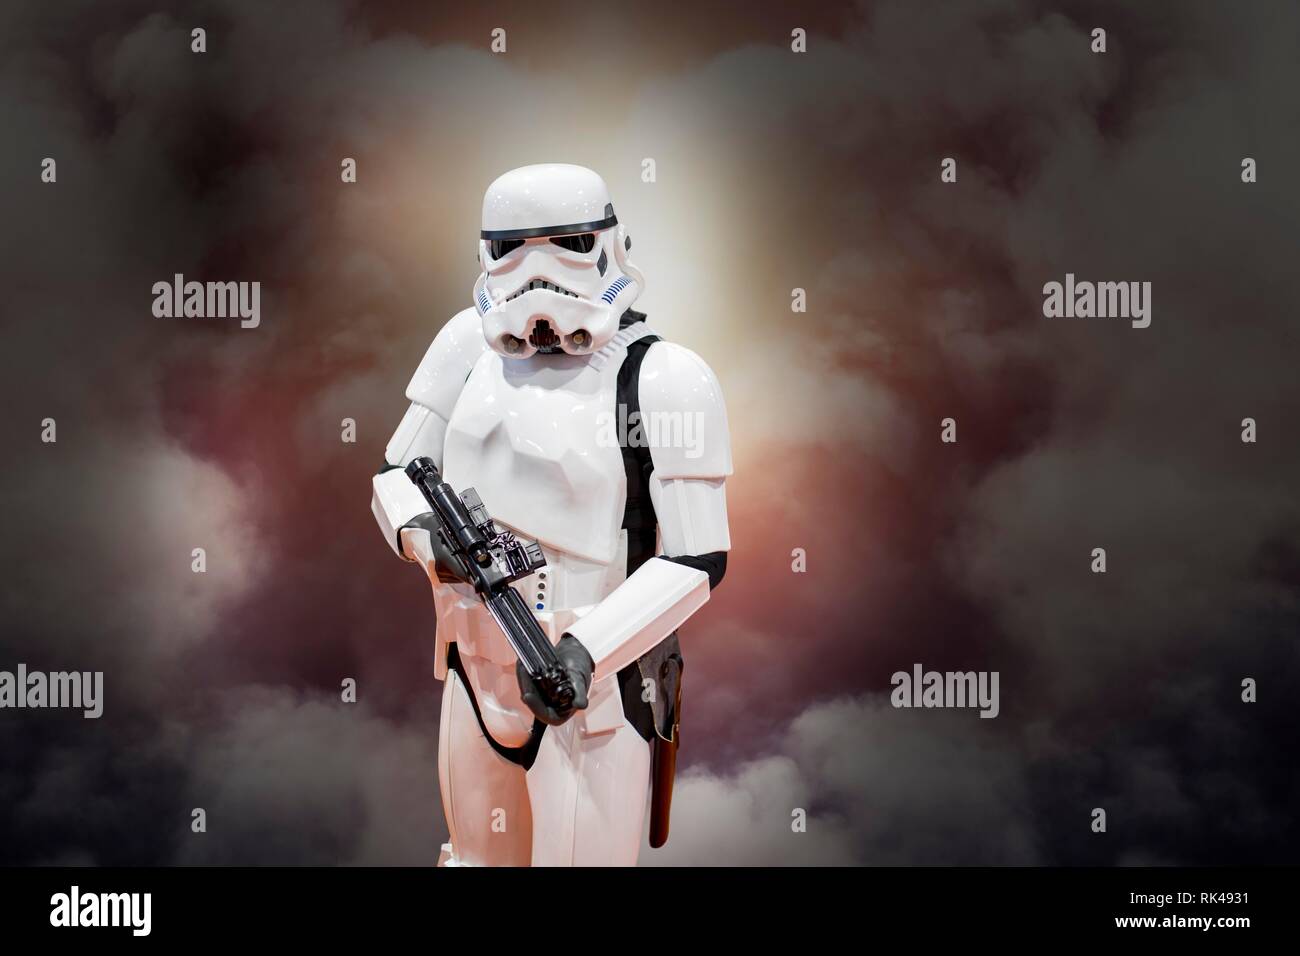 Birmingham, Großbritannien - 17 März, 2018. Ein cosplayer in einem Storm Trooper Kostüm aus Star Wars Filmen zu einem Comic Con in Birmingham, UK Zeigen einer Gewehr gekleidet Stockfoto